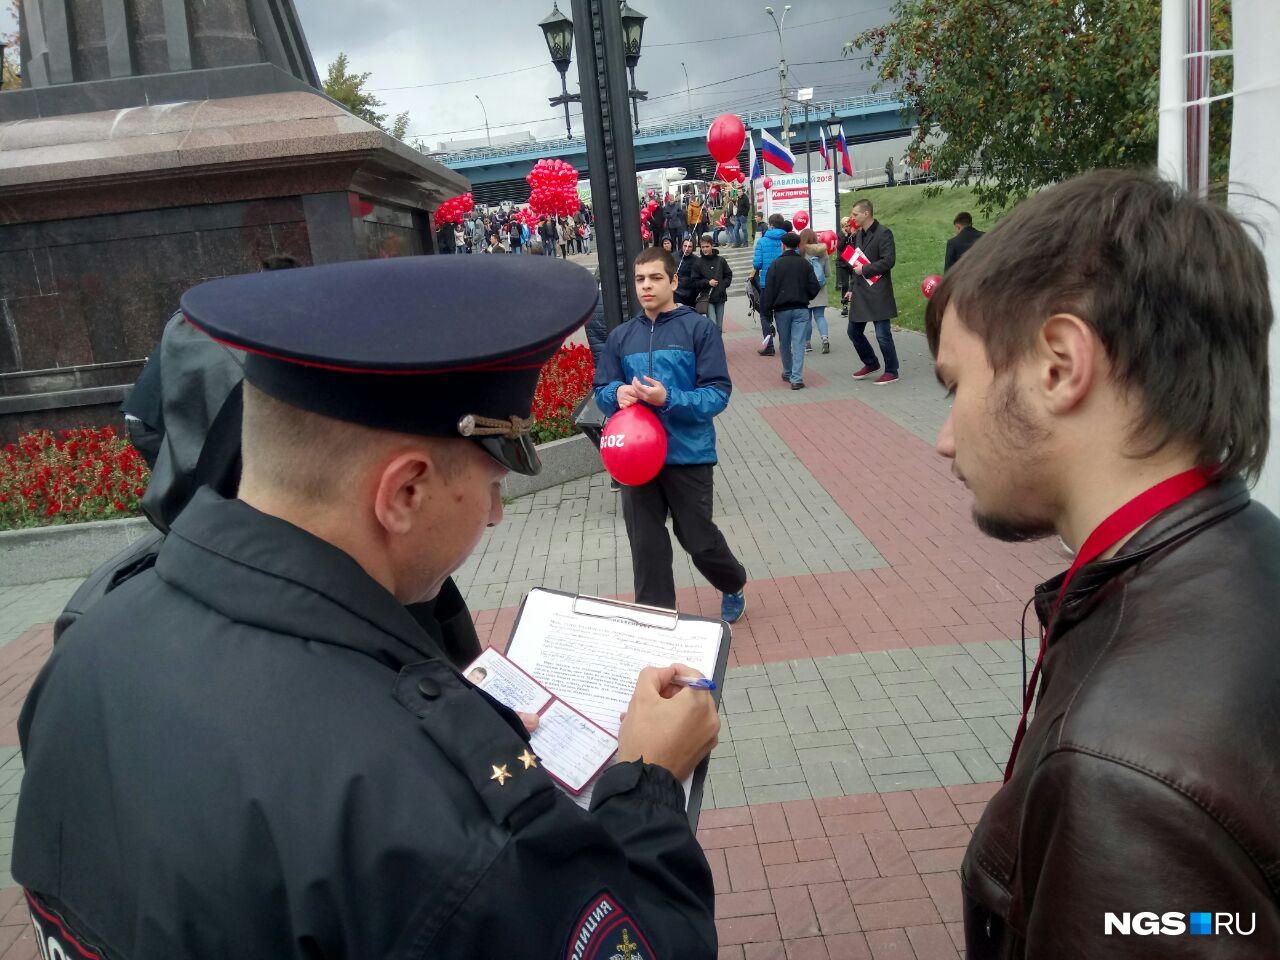 Беседа полицейского со студентом-распространителем газет. Фото Кирилла Шматкова